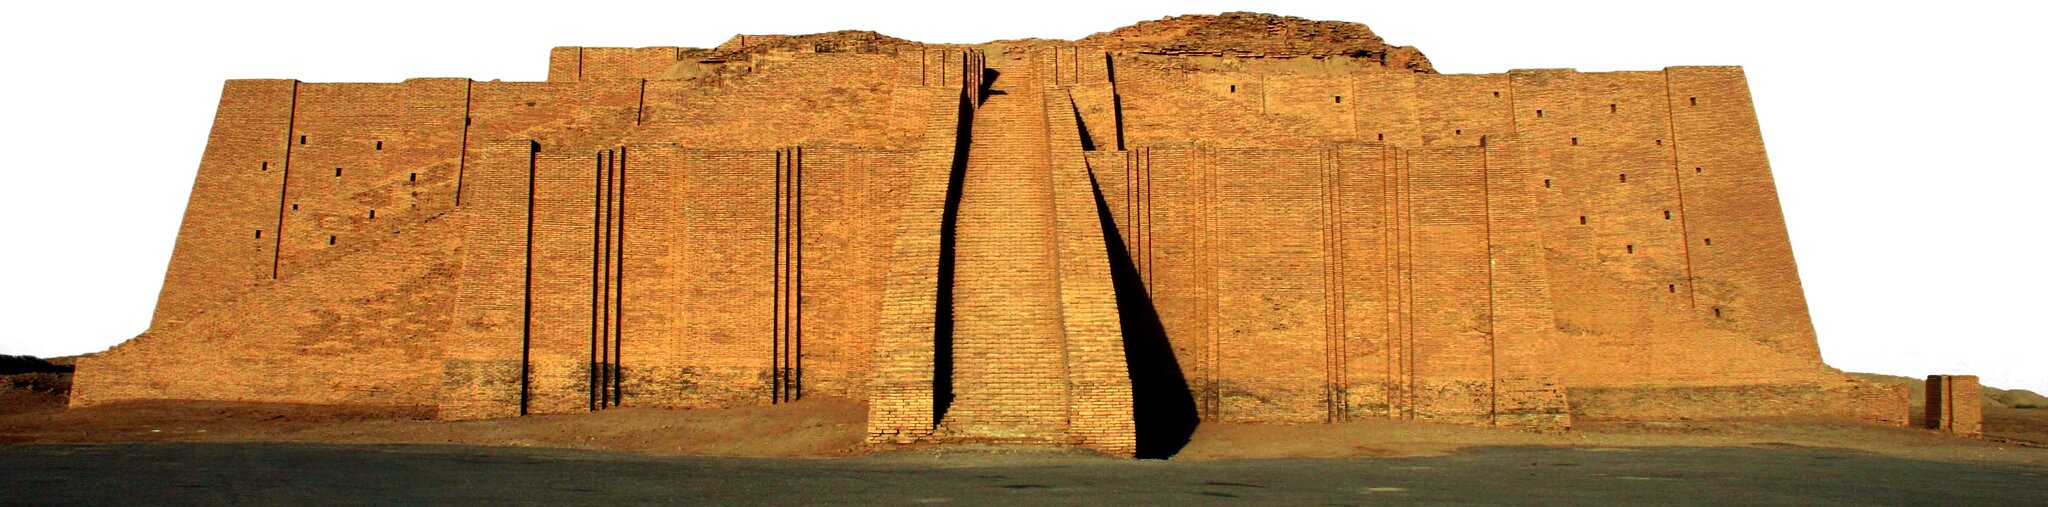 Sumerowie wierzyli w wielu bogów. Każde miasto miało swoje bóstwo opiekuńcze. Świątynie stawiano na szczytach konstrukcji zwanych zigguratami. W Mezopotamii trudno było o kamień, więc zikkuraty budowano z glinianych, suszonych na słońcu cegieł. Sumerowie wierzyli w wielu bogów. Każde miasto miało swoje bóstwo opiekuńcze. Świątynie stawiano na szczytach konstrukcji zwanych zigguratami. W Mezopotamii trudno było o kamień, więc zikkuraty budowano z glinianych, suszonych na słońcu cegieł. Źródło: domena publiczna.